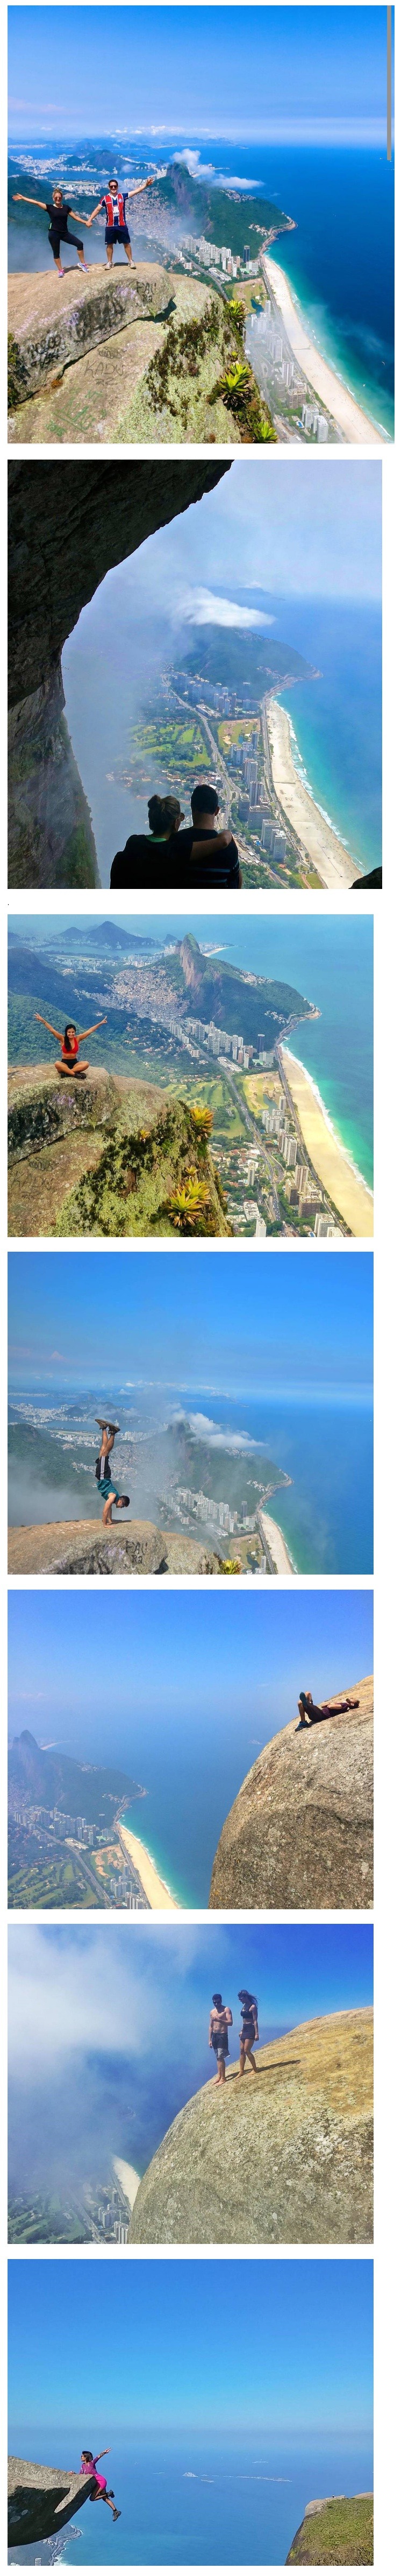 브라질의 후덜덜한 사진 명소.jpg